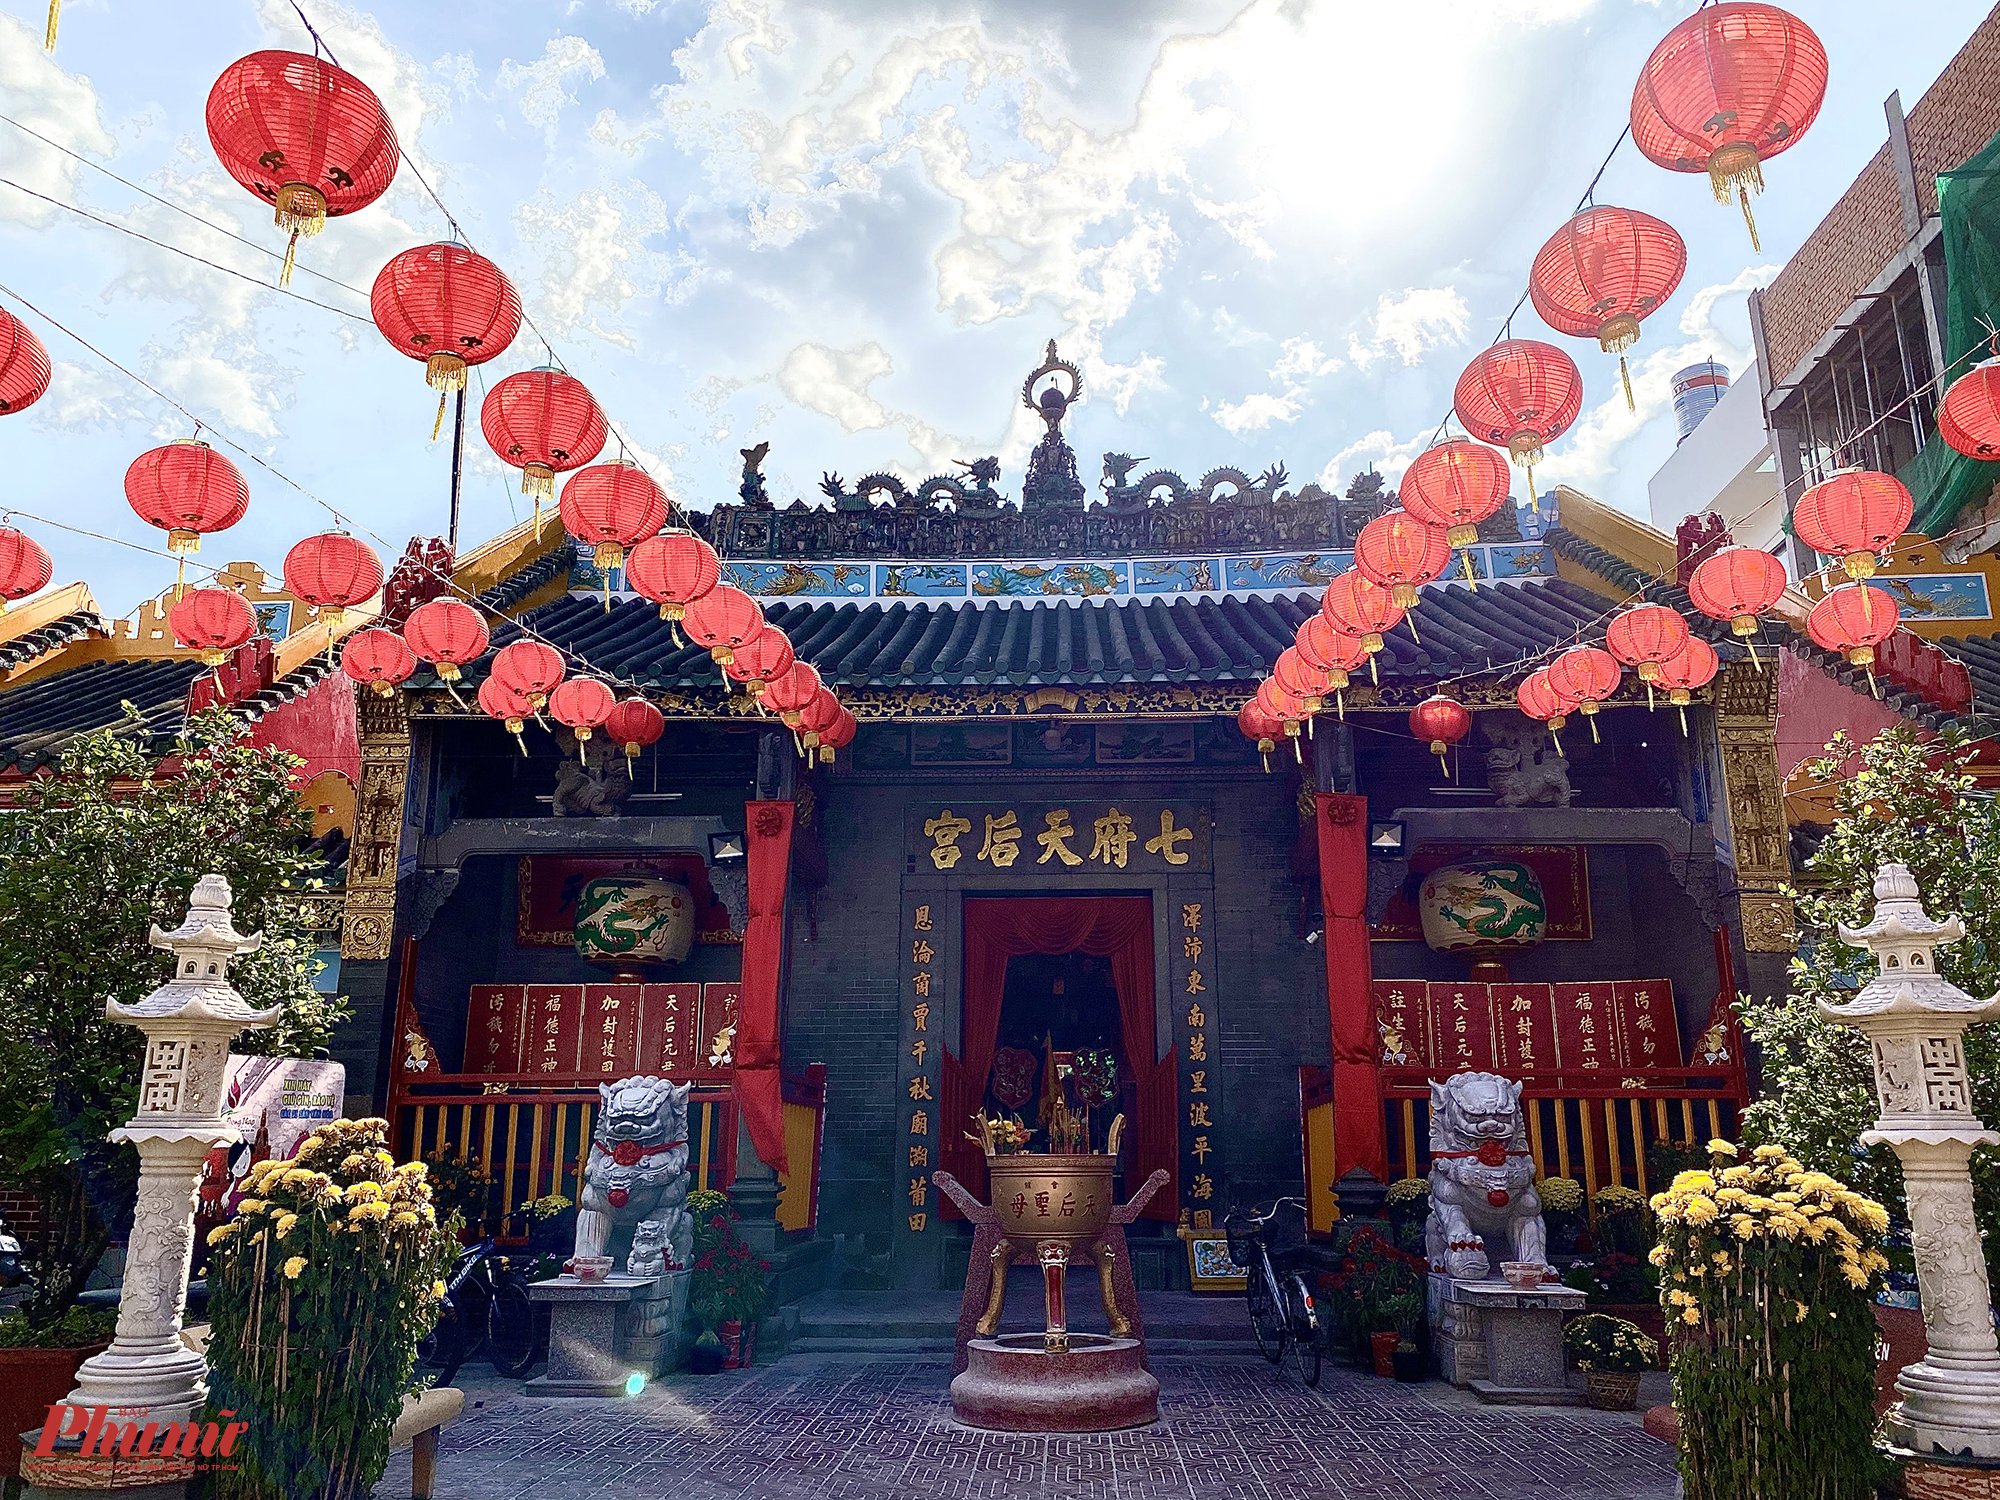 Chùa toạ lạc tại số 143, đường Trần Hưng Đạo, P.1, TP. Sa Đéc. Ngay từ cổng chùa, du khách đã có thể nhận ra kiến trúc đặc trưng của người Hoa.